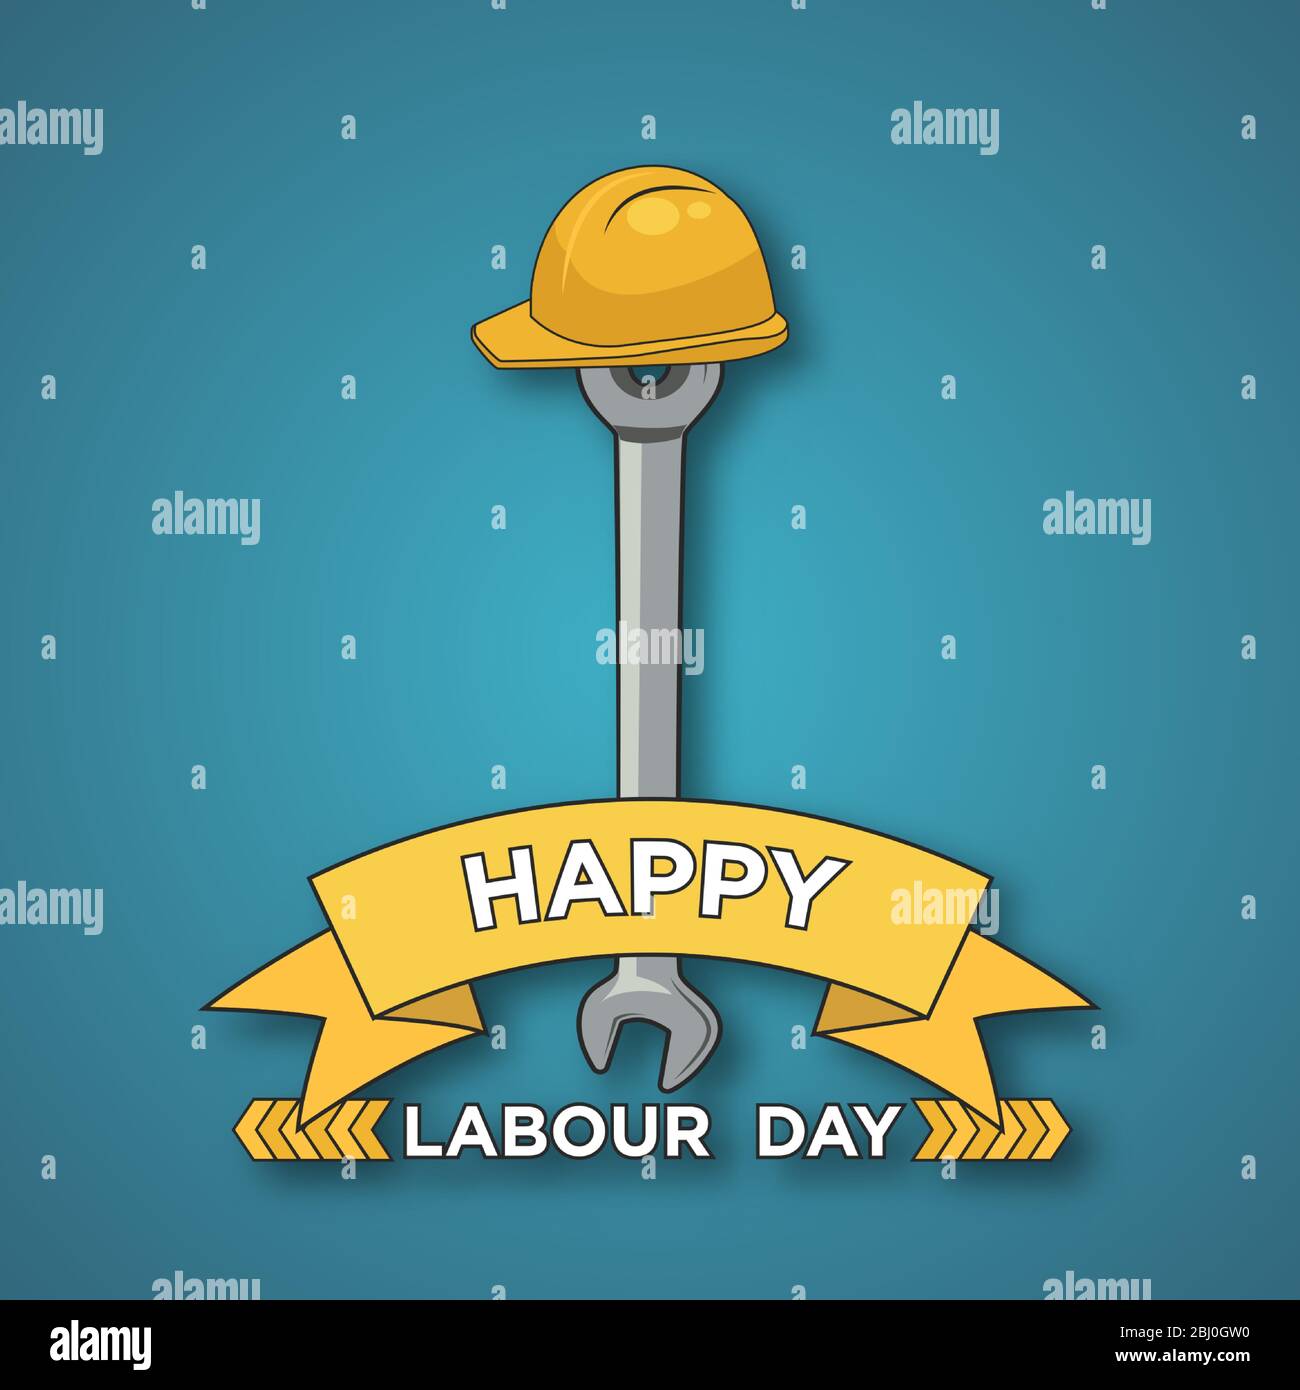 Happy Labor Day Design. Feierlichkeiten zum Internationalen Tag der Arbeit am 1. Mai. Abbildung von Arbeitsschlüssel und Helm auf blauem Hintergrund. Stock Vektor